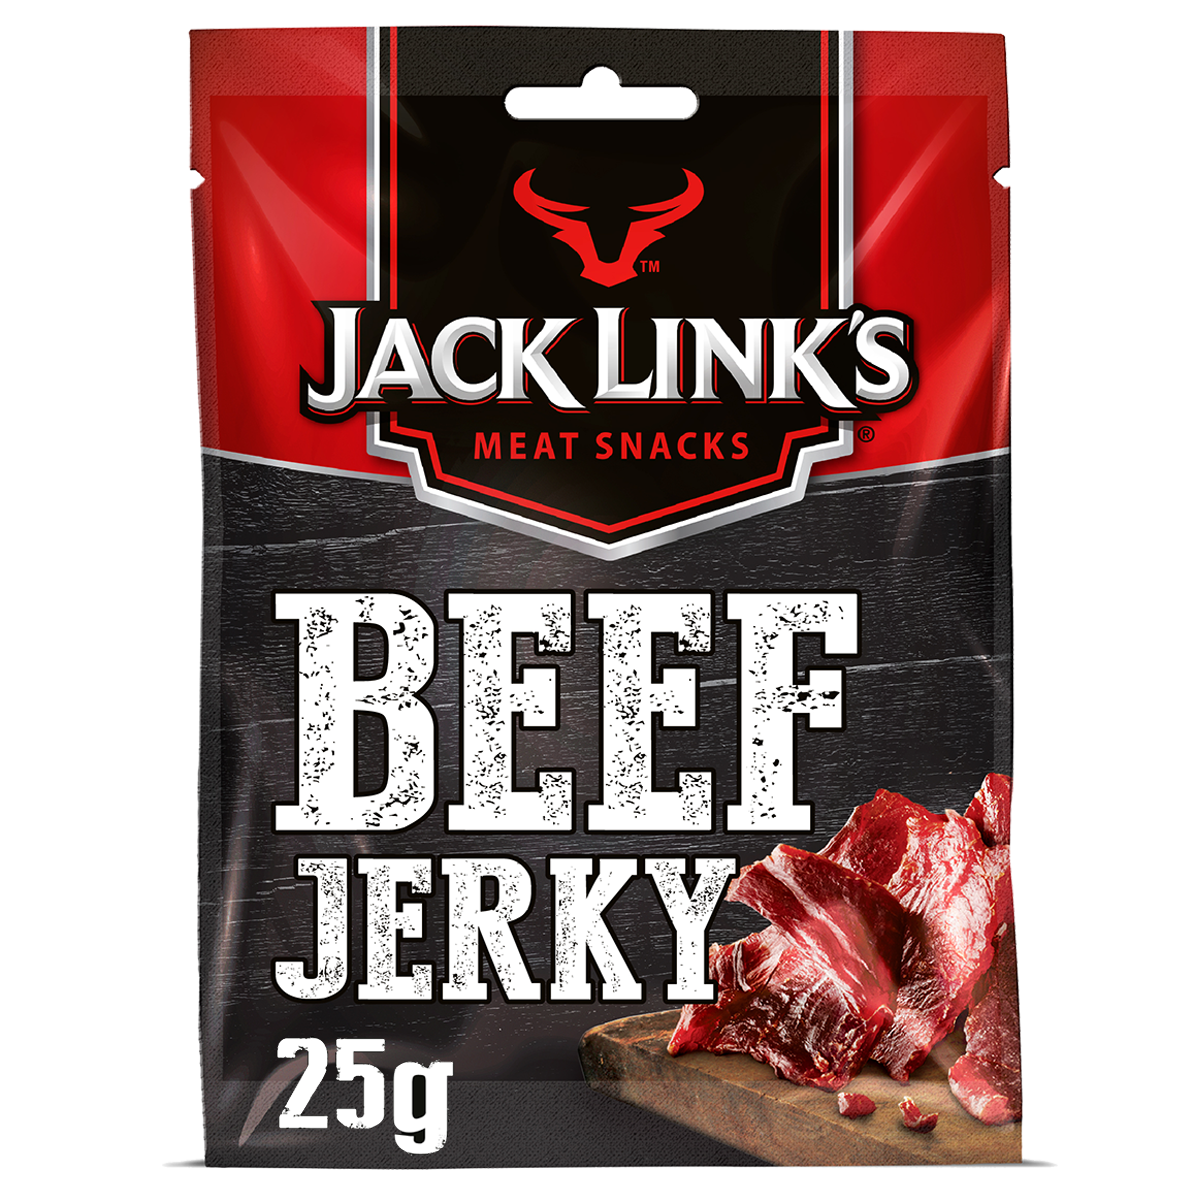 Jack Link’s beef Jerky